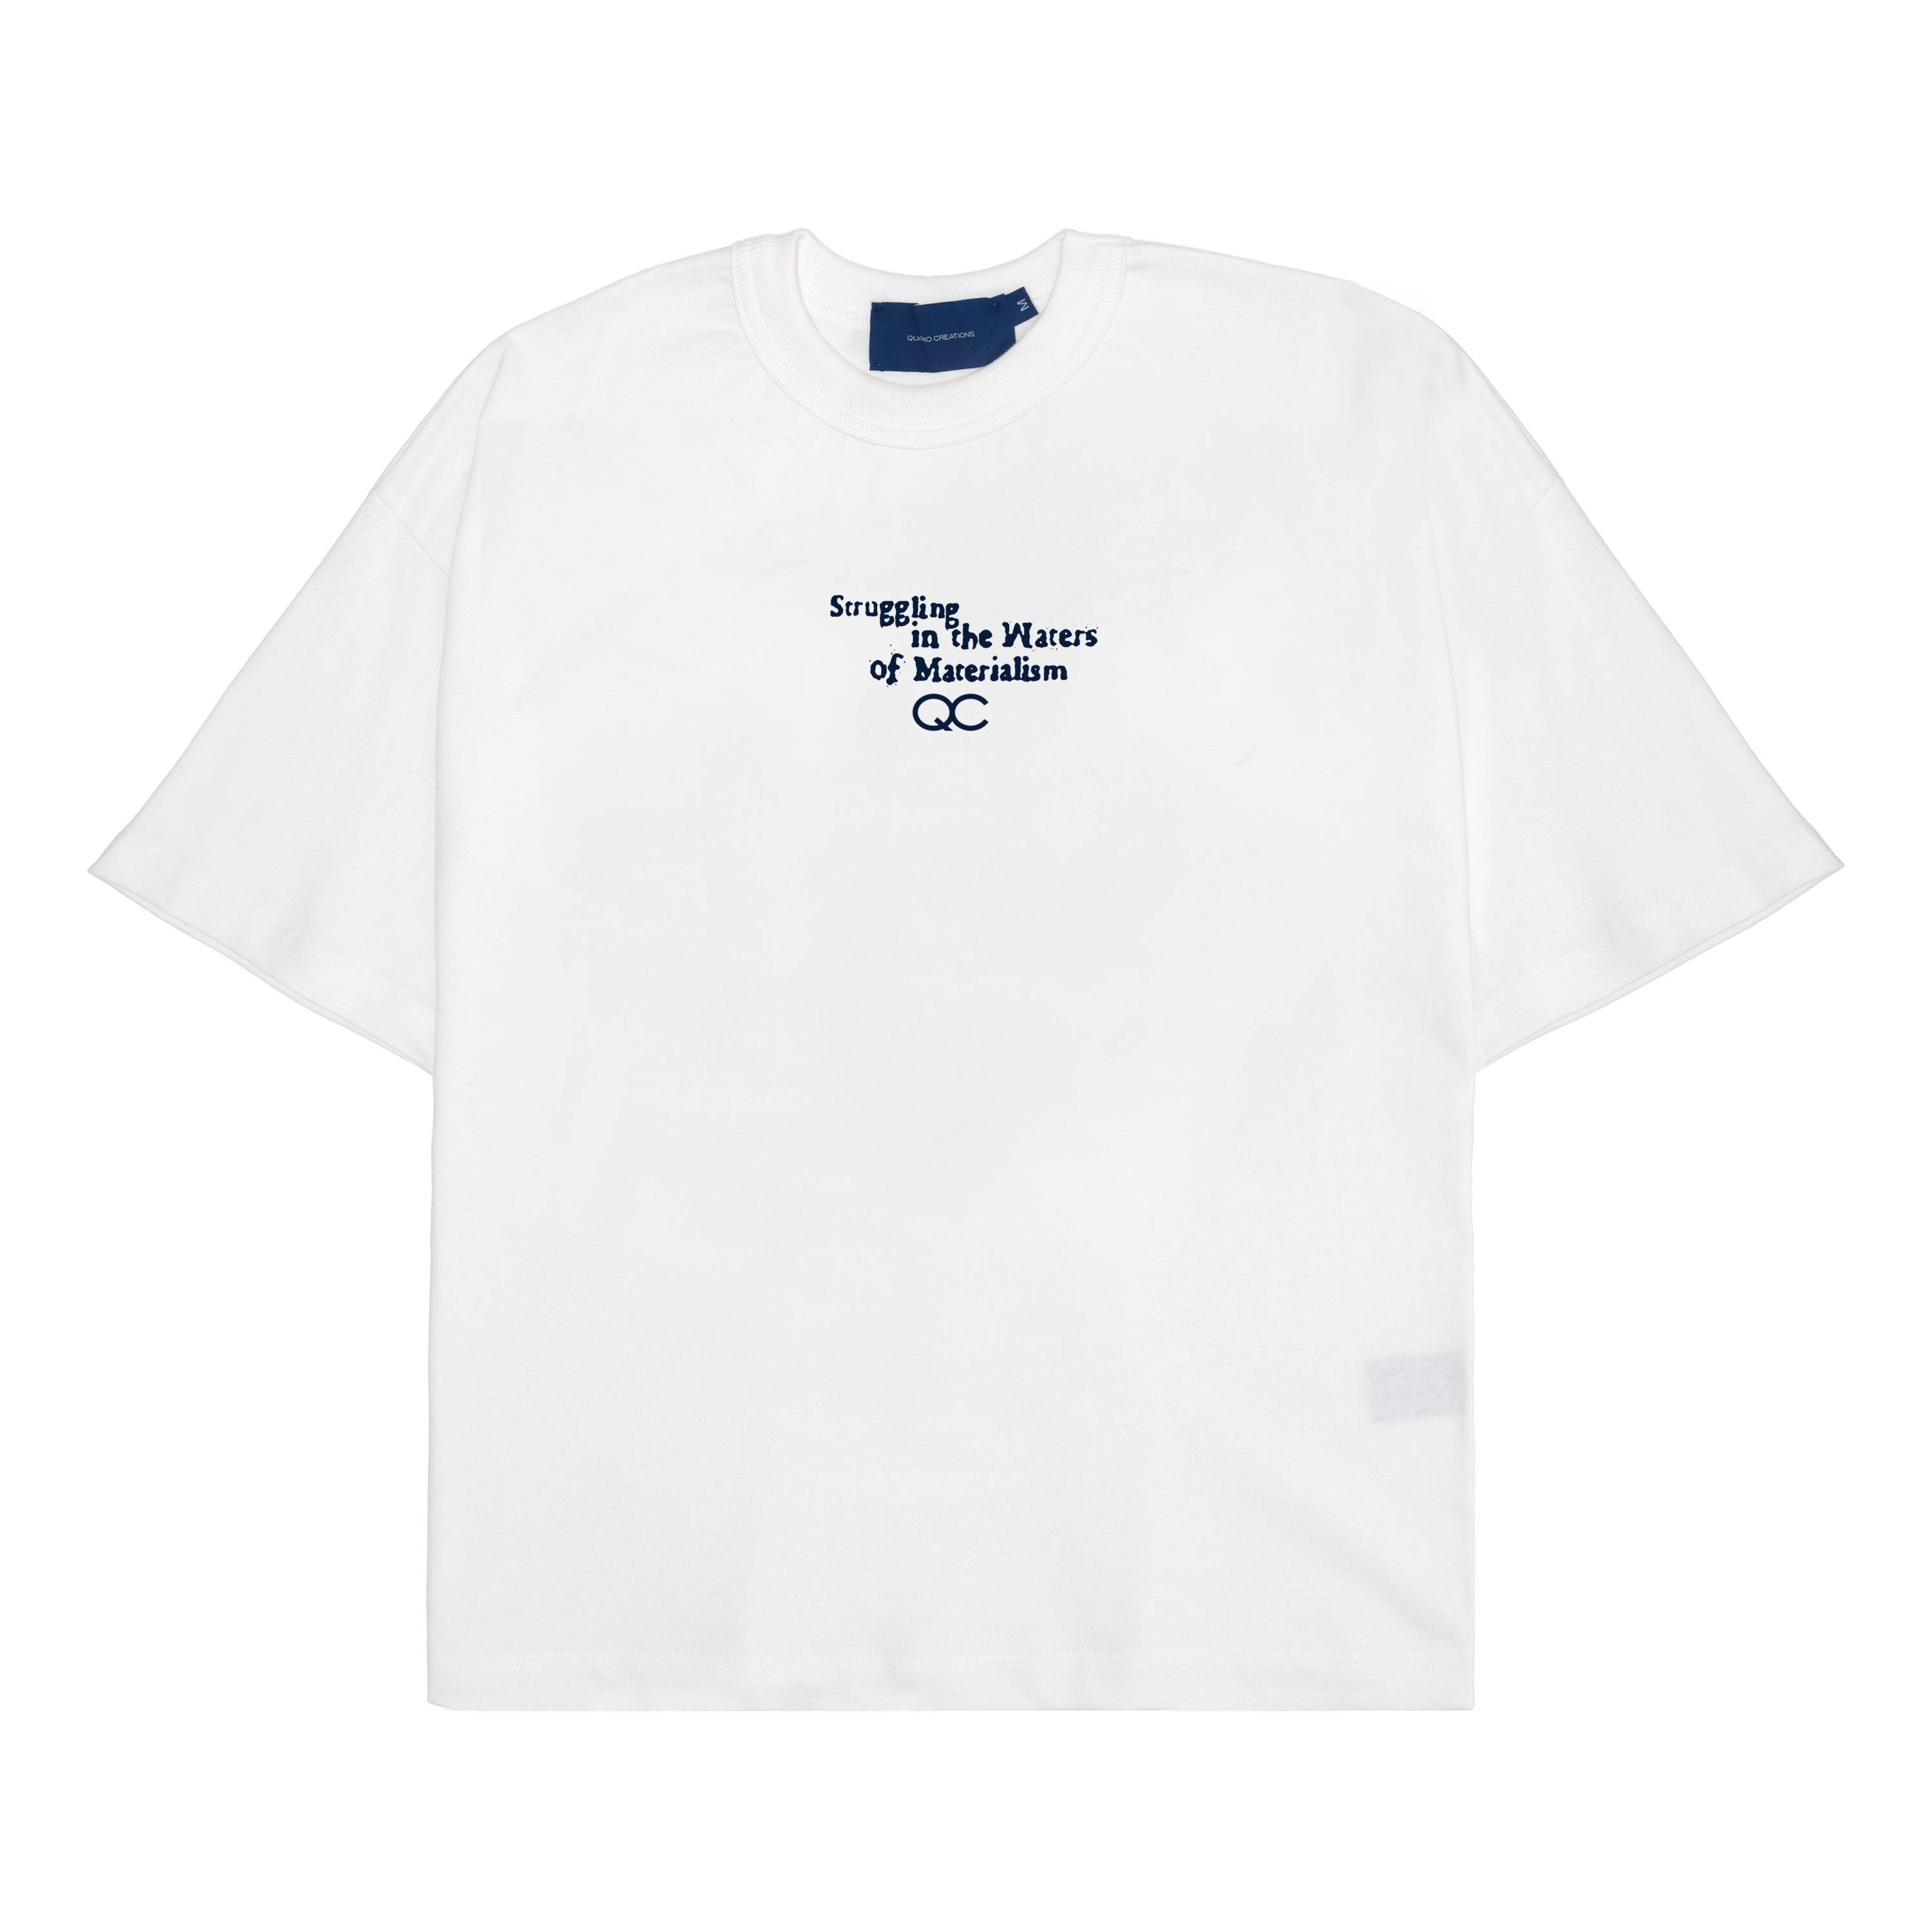 QUADRO CREATIONS -  Camiseta Urizen Off White